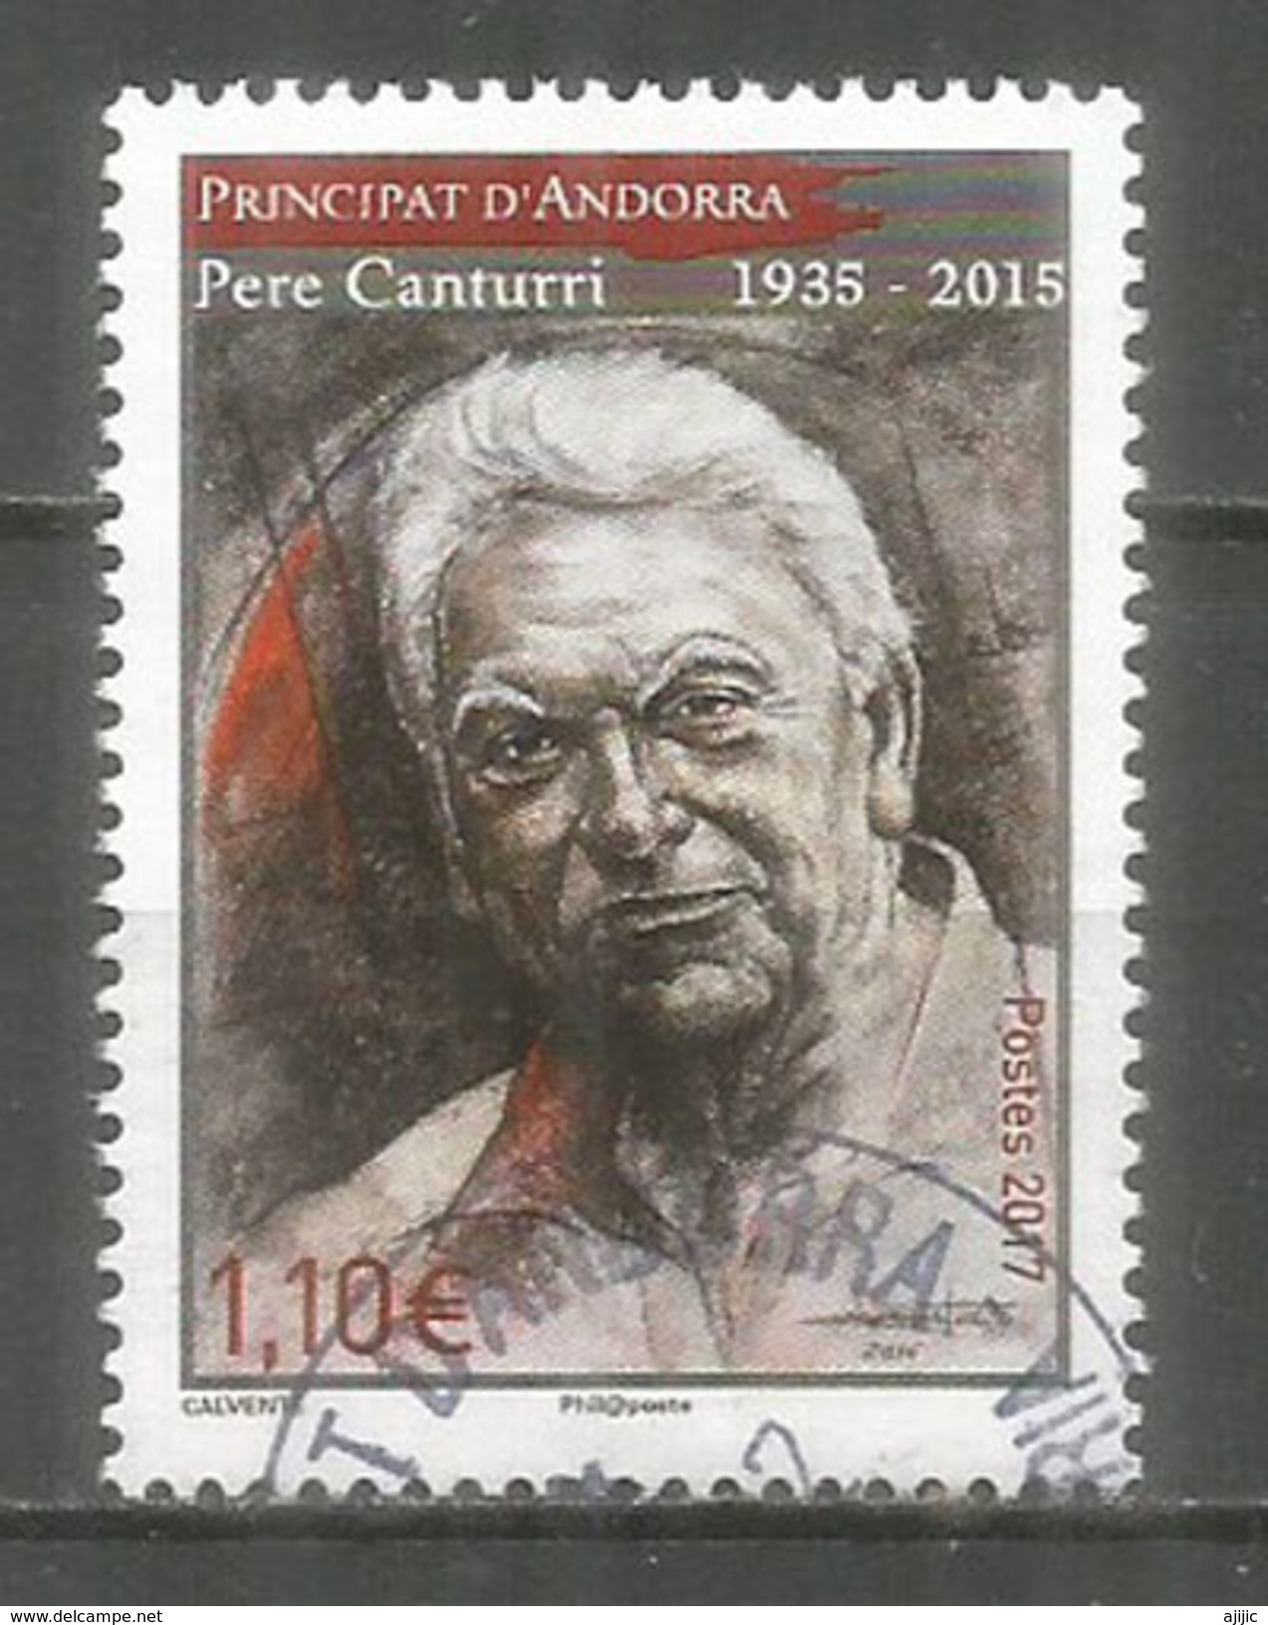 Pere Canturri (Ethnographe De La Culture Et Des Traditions Andorranes), Un Timbre Oblitéré 1 ère Qualité - Used Stamps